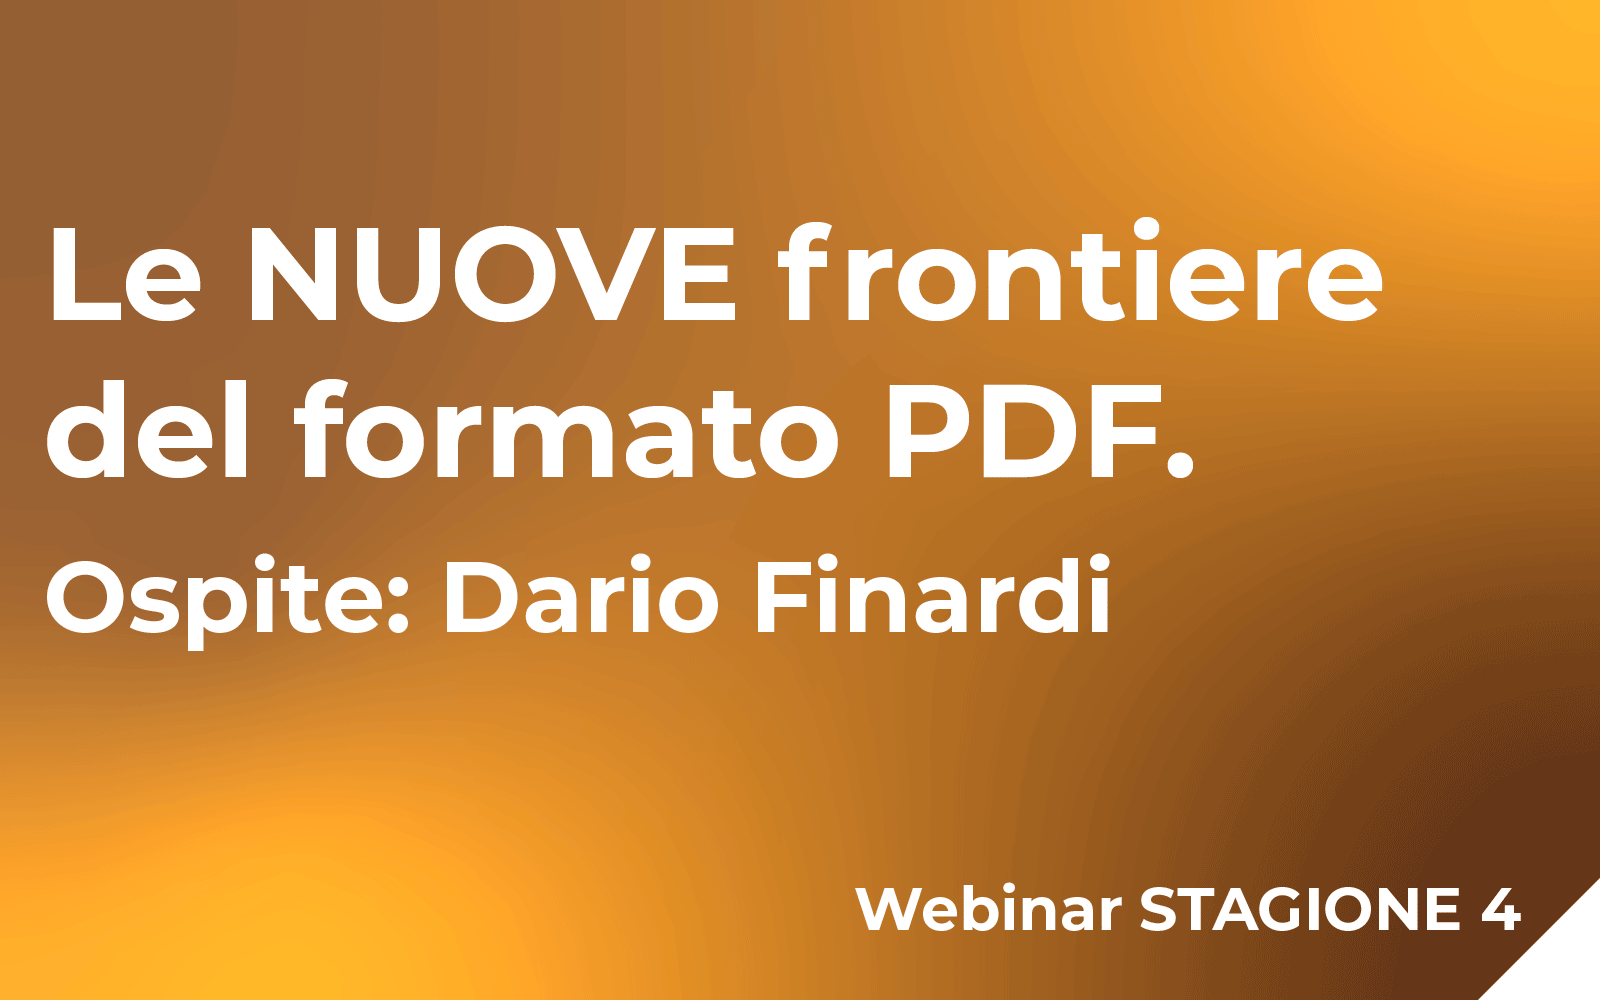 Le NUOVE frontiere del formato PDF ospite: Dario Finardi Webinar